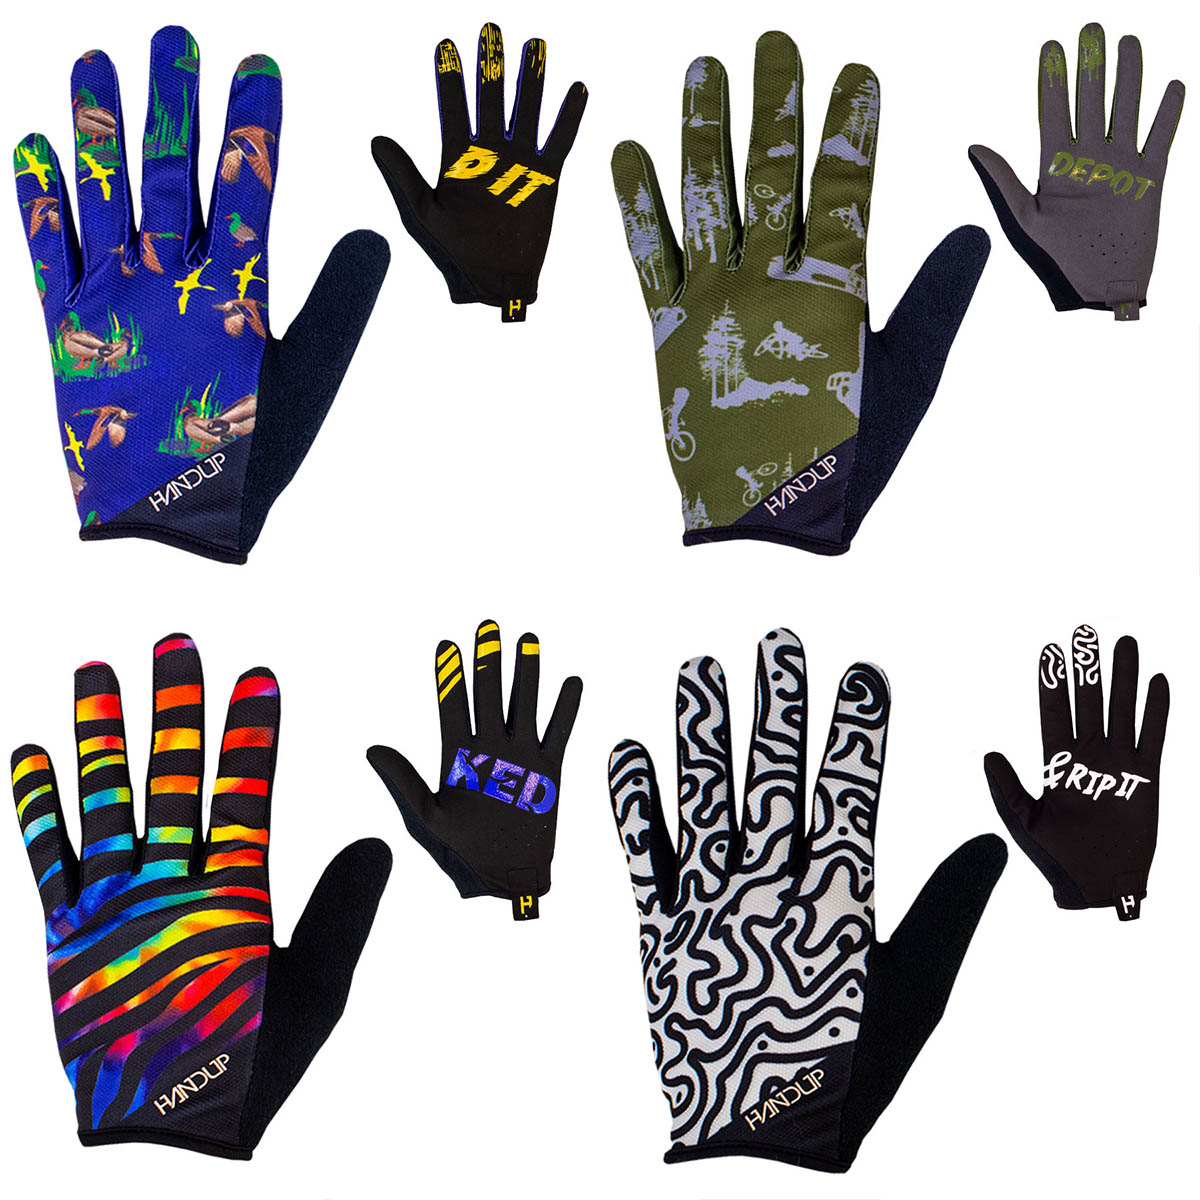 Handup Fall 2019 gloves